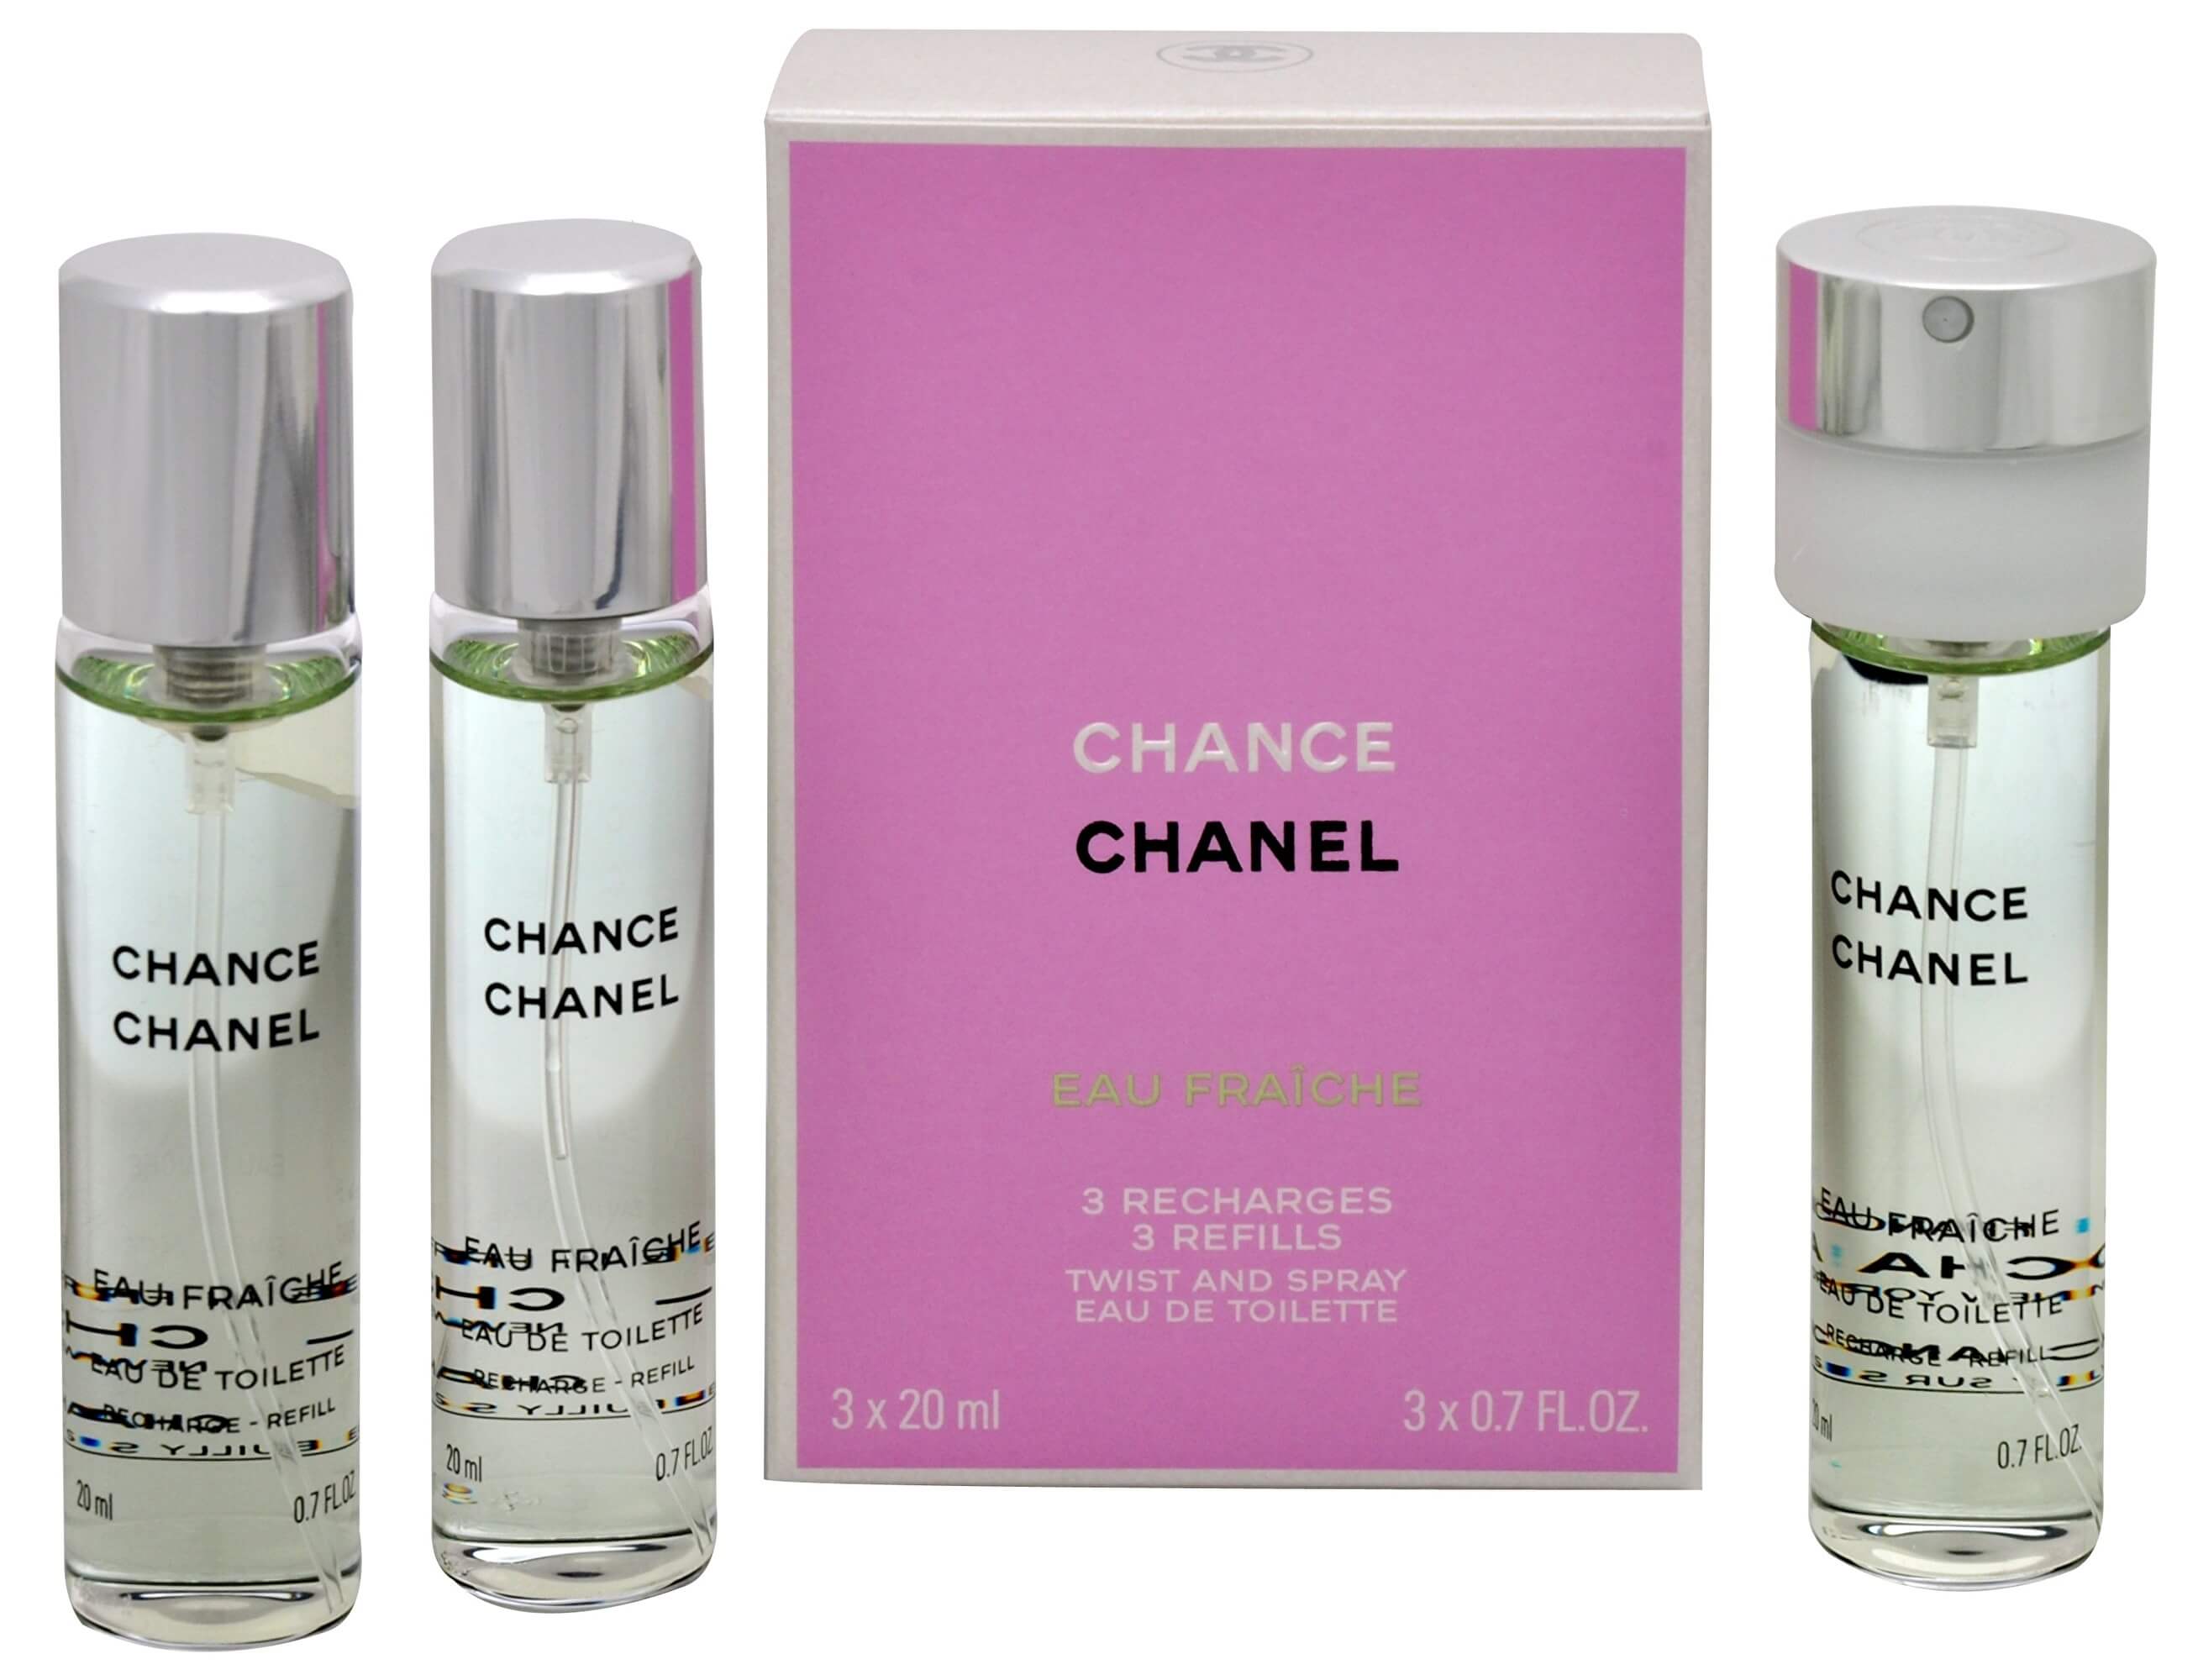 Nước hoa nữ Chanel Chance Eau Fraiche EDT 100ml chính hãng Pháp